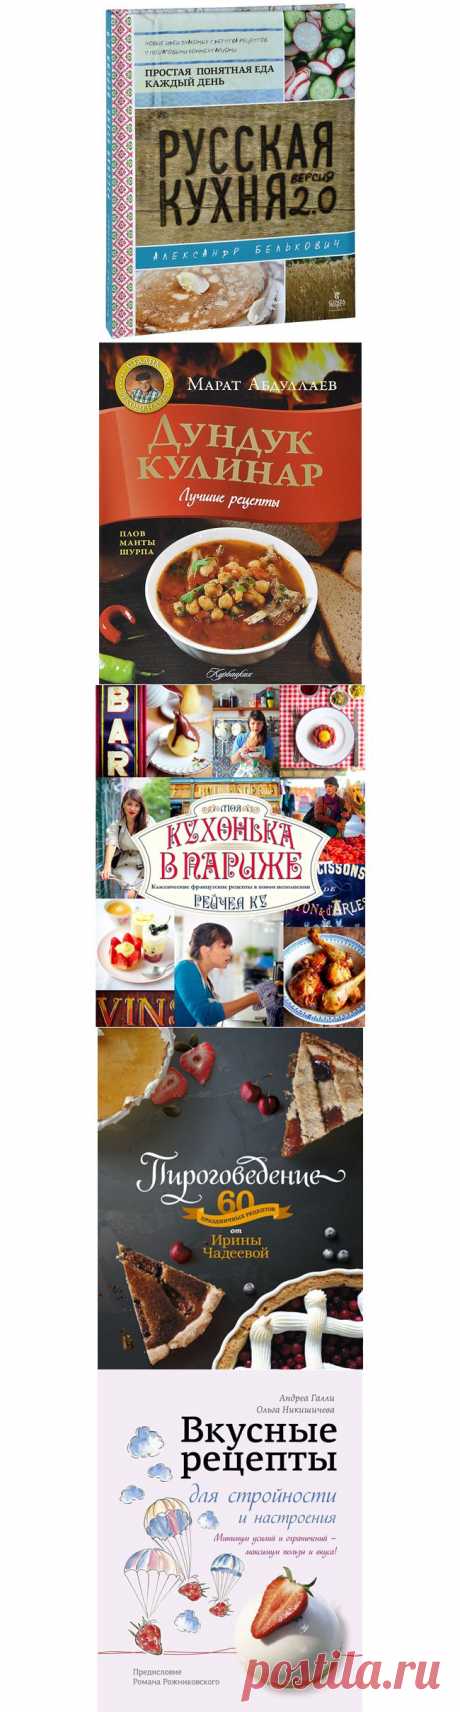 8 новых кулинарных книг